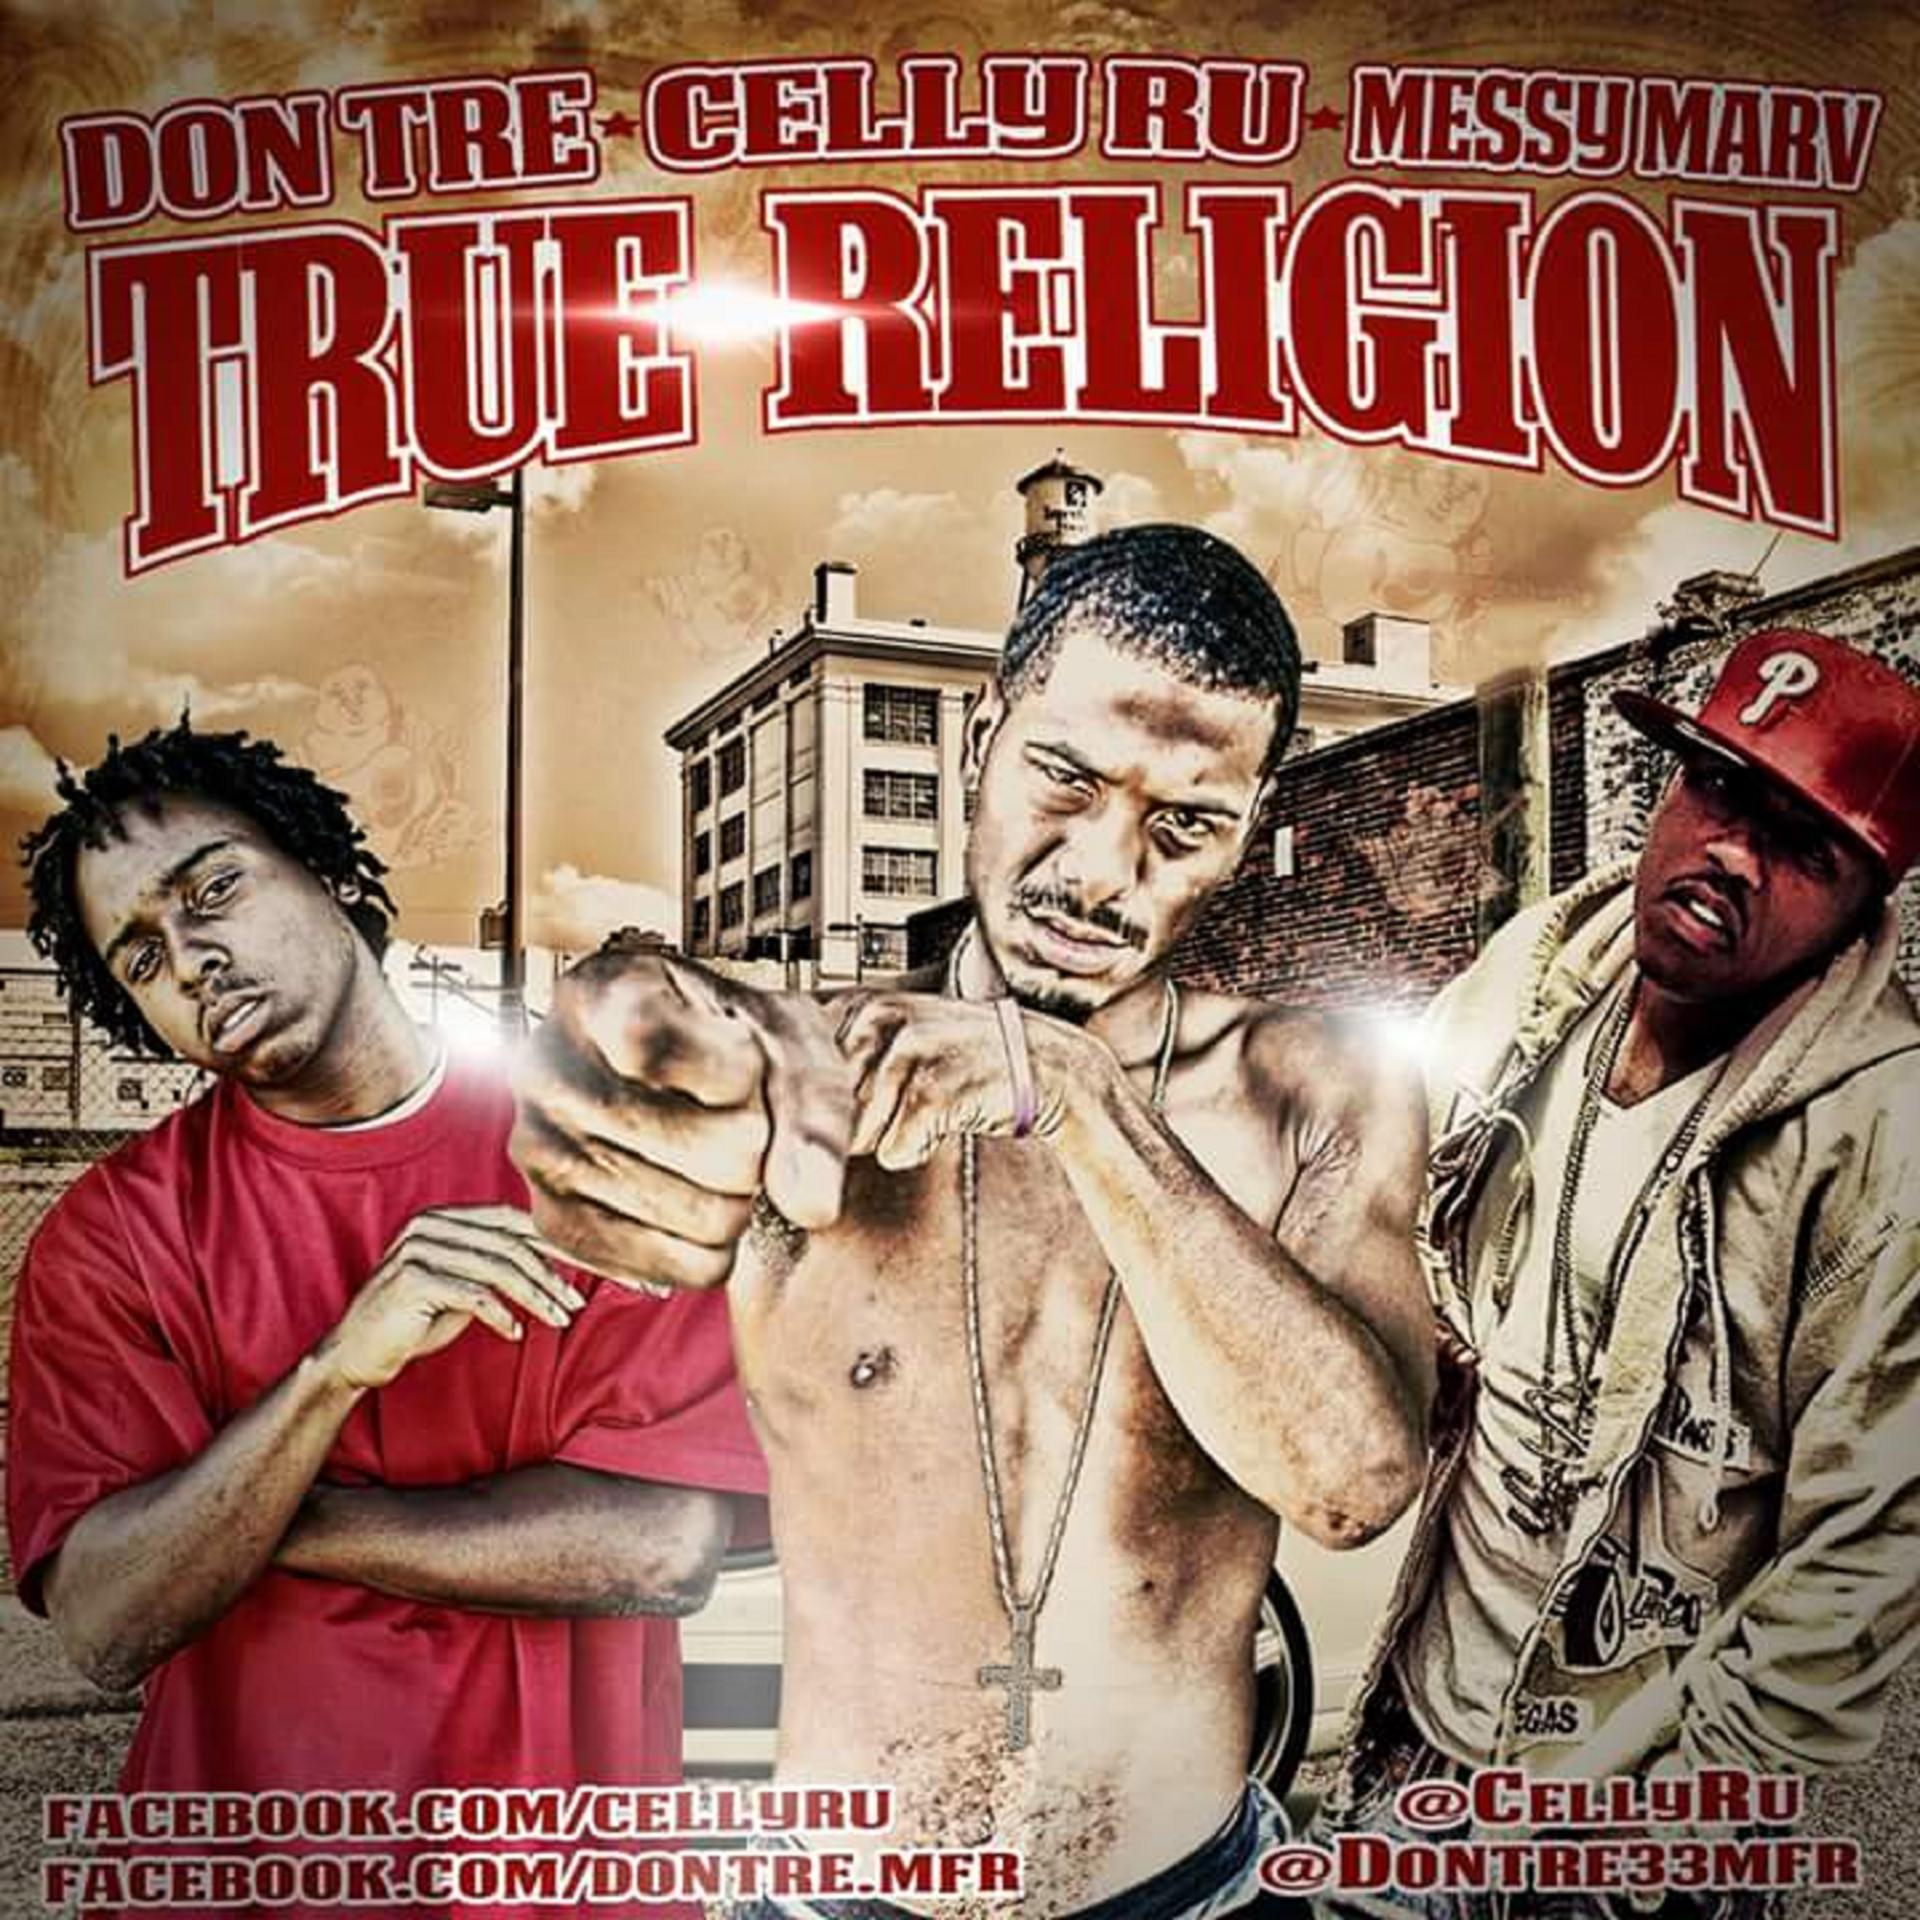 Постер альбома True Religion